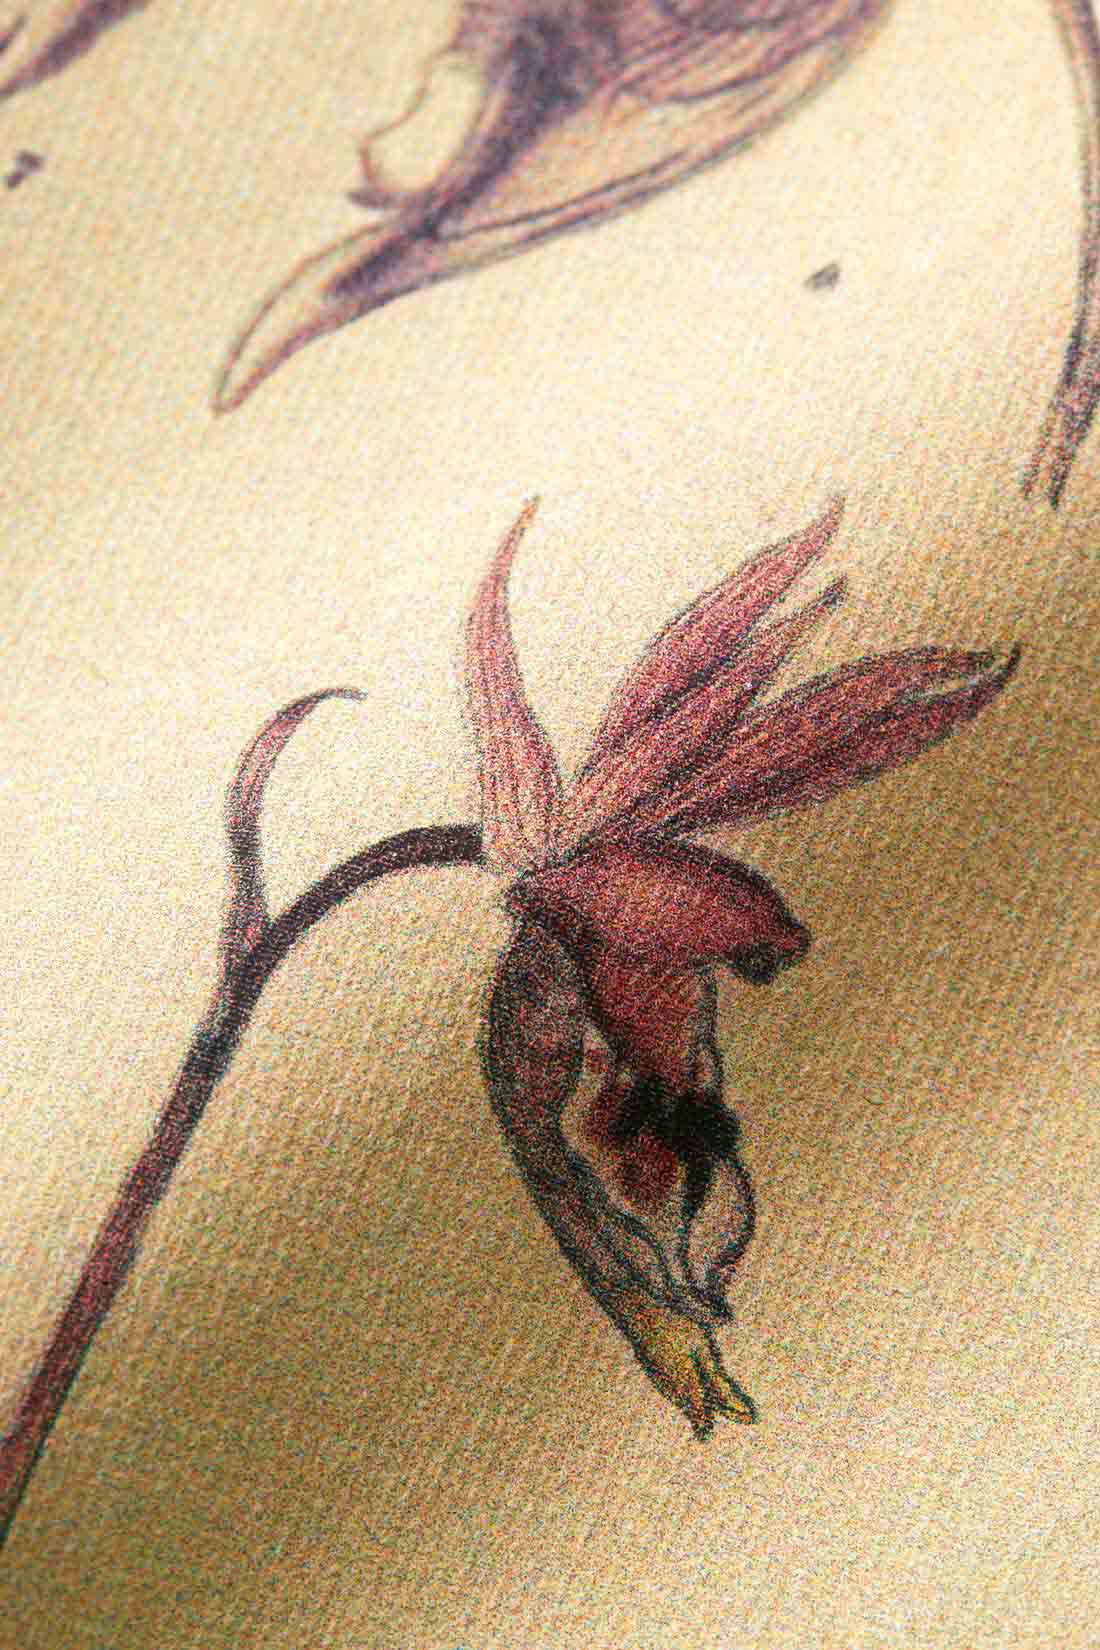 牧野植物園×IEDIT[イディット]コラボ 牧野博士の描いた植物図プリントTシャツの会|インクジェットで風合い豊かにプリントで再現。